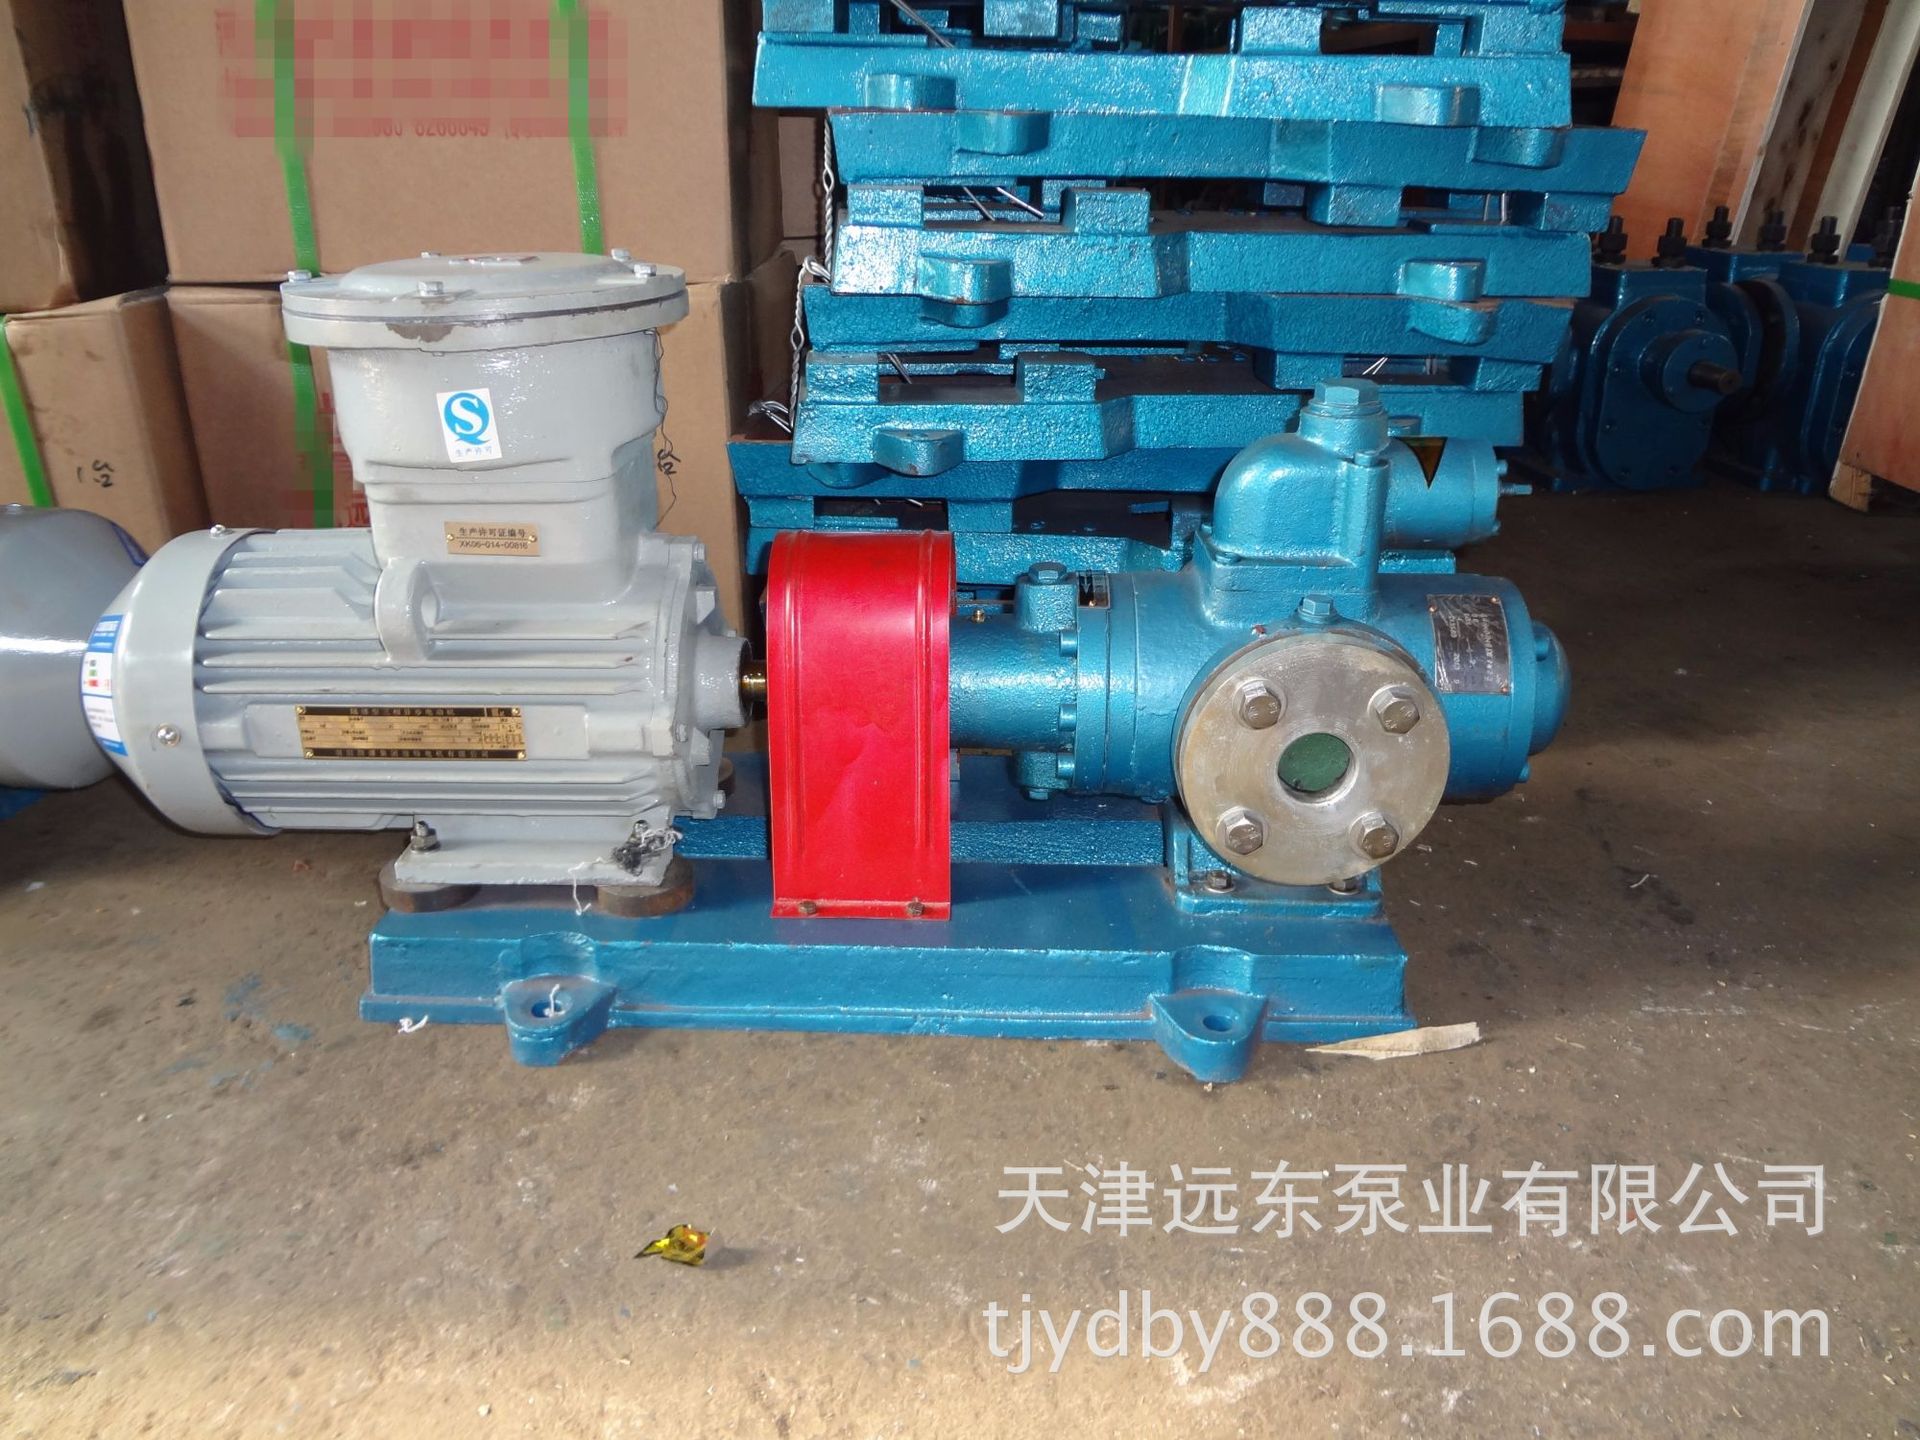 天津远东 SN三螺杆泵 SNH40R46U12.1W2 重柴油输送泵 厂家直销示例图2